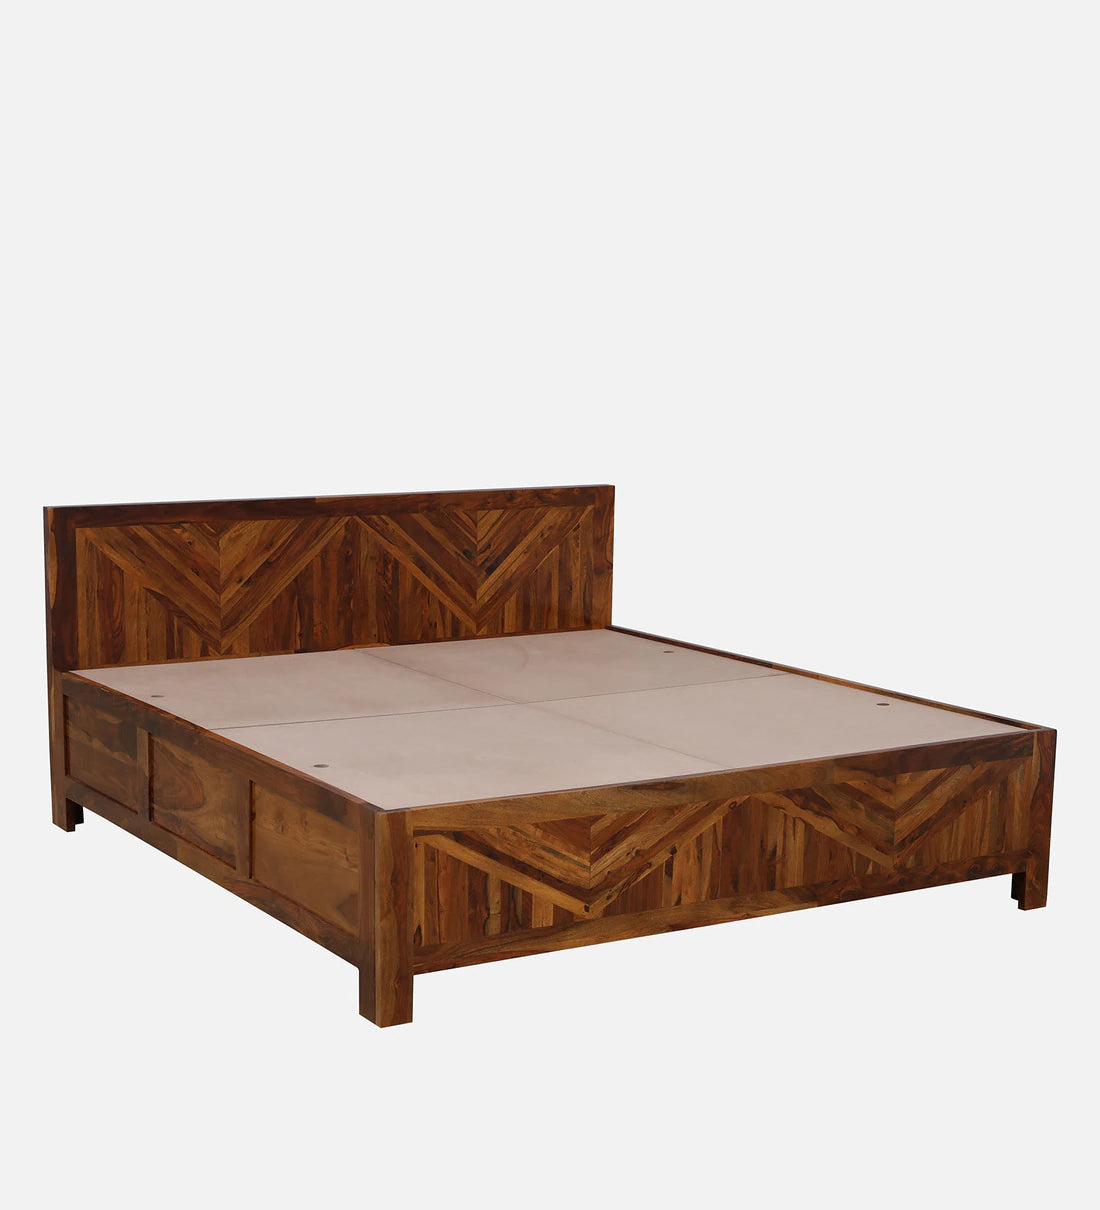 Sheesham Wood King Size Bed With Box Storage in Light Honey Finish